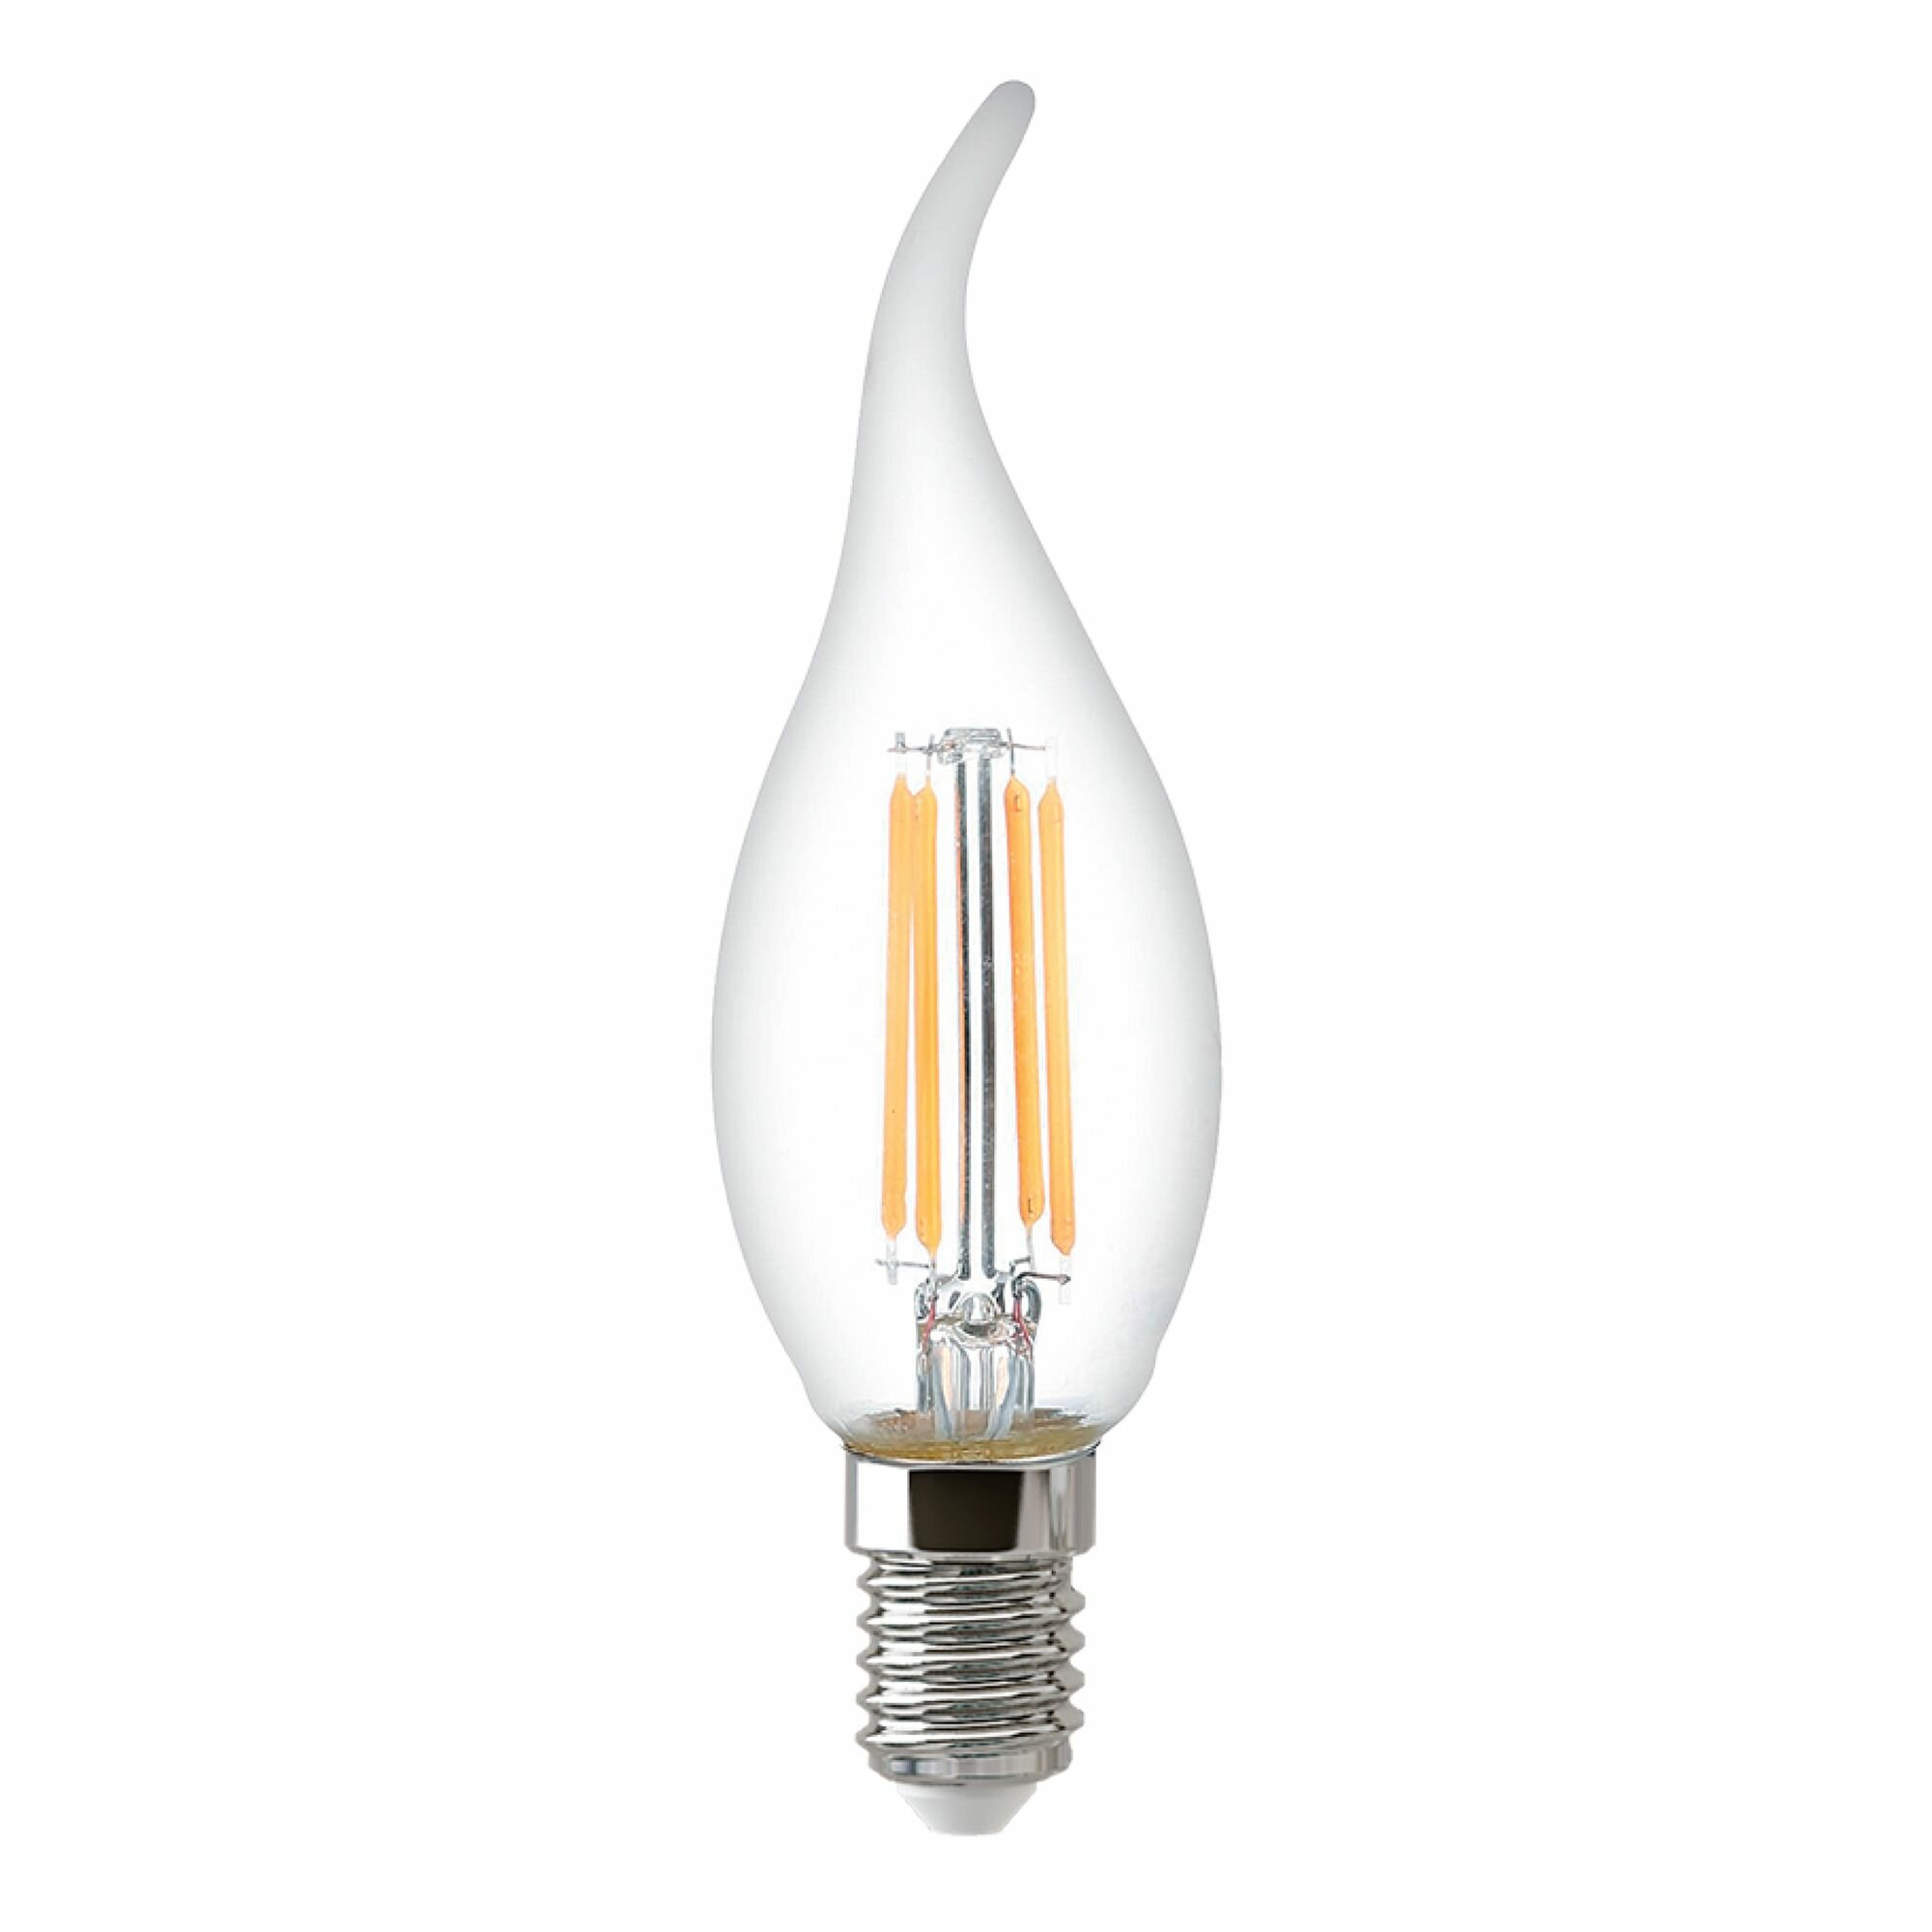 Лампочка Thomson филаментная TH-B2335 5 Вт, E14, 6500K, свеча на ветру, холодный белый свет